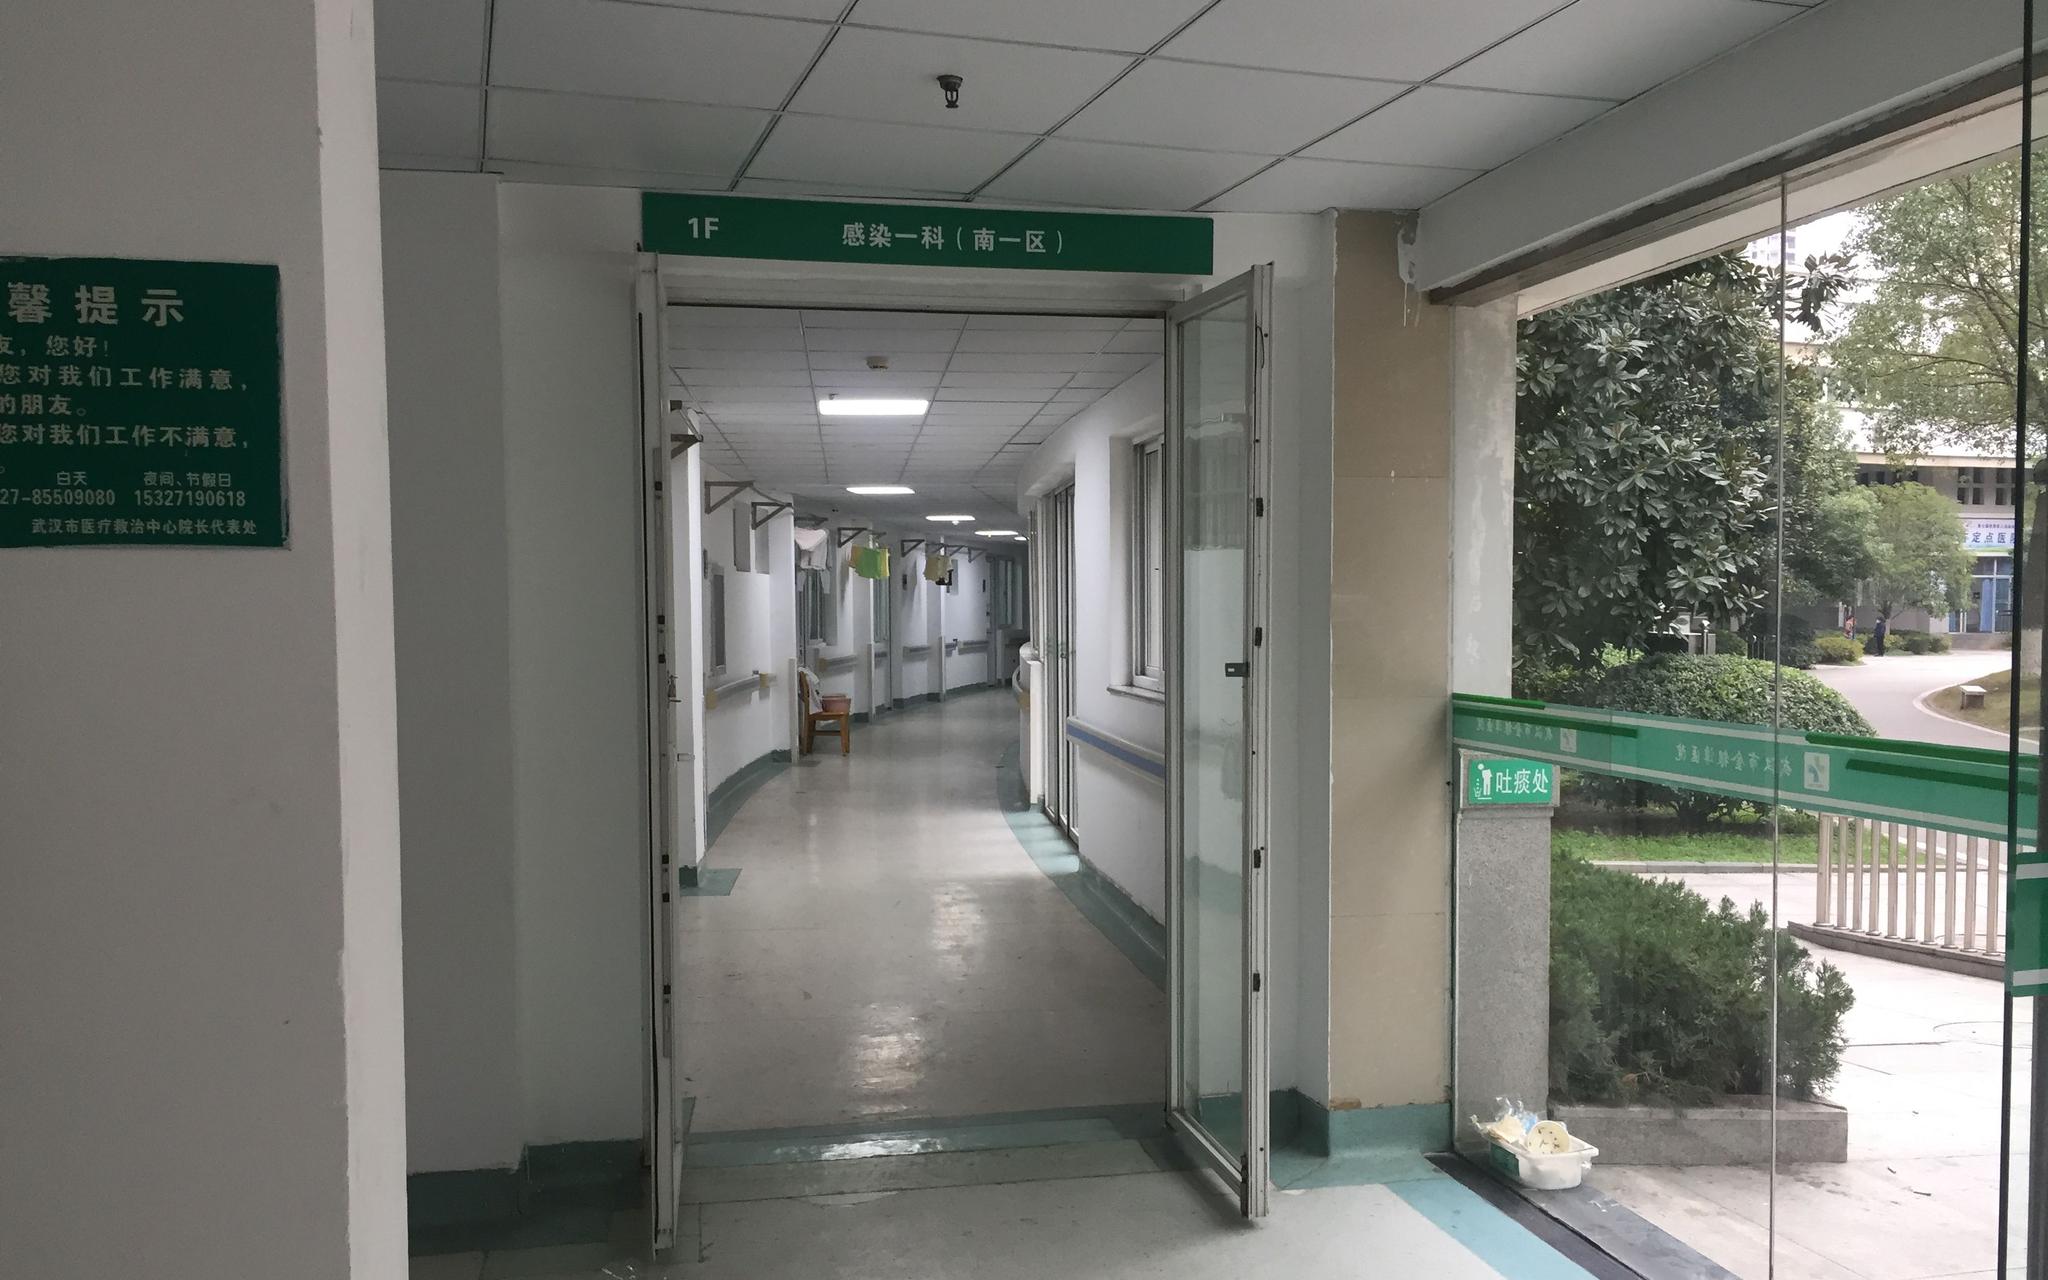  金银潭医院的感染科病房。 新京报记者 张胜坡 摄